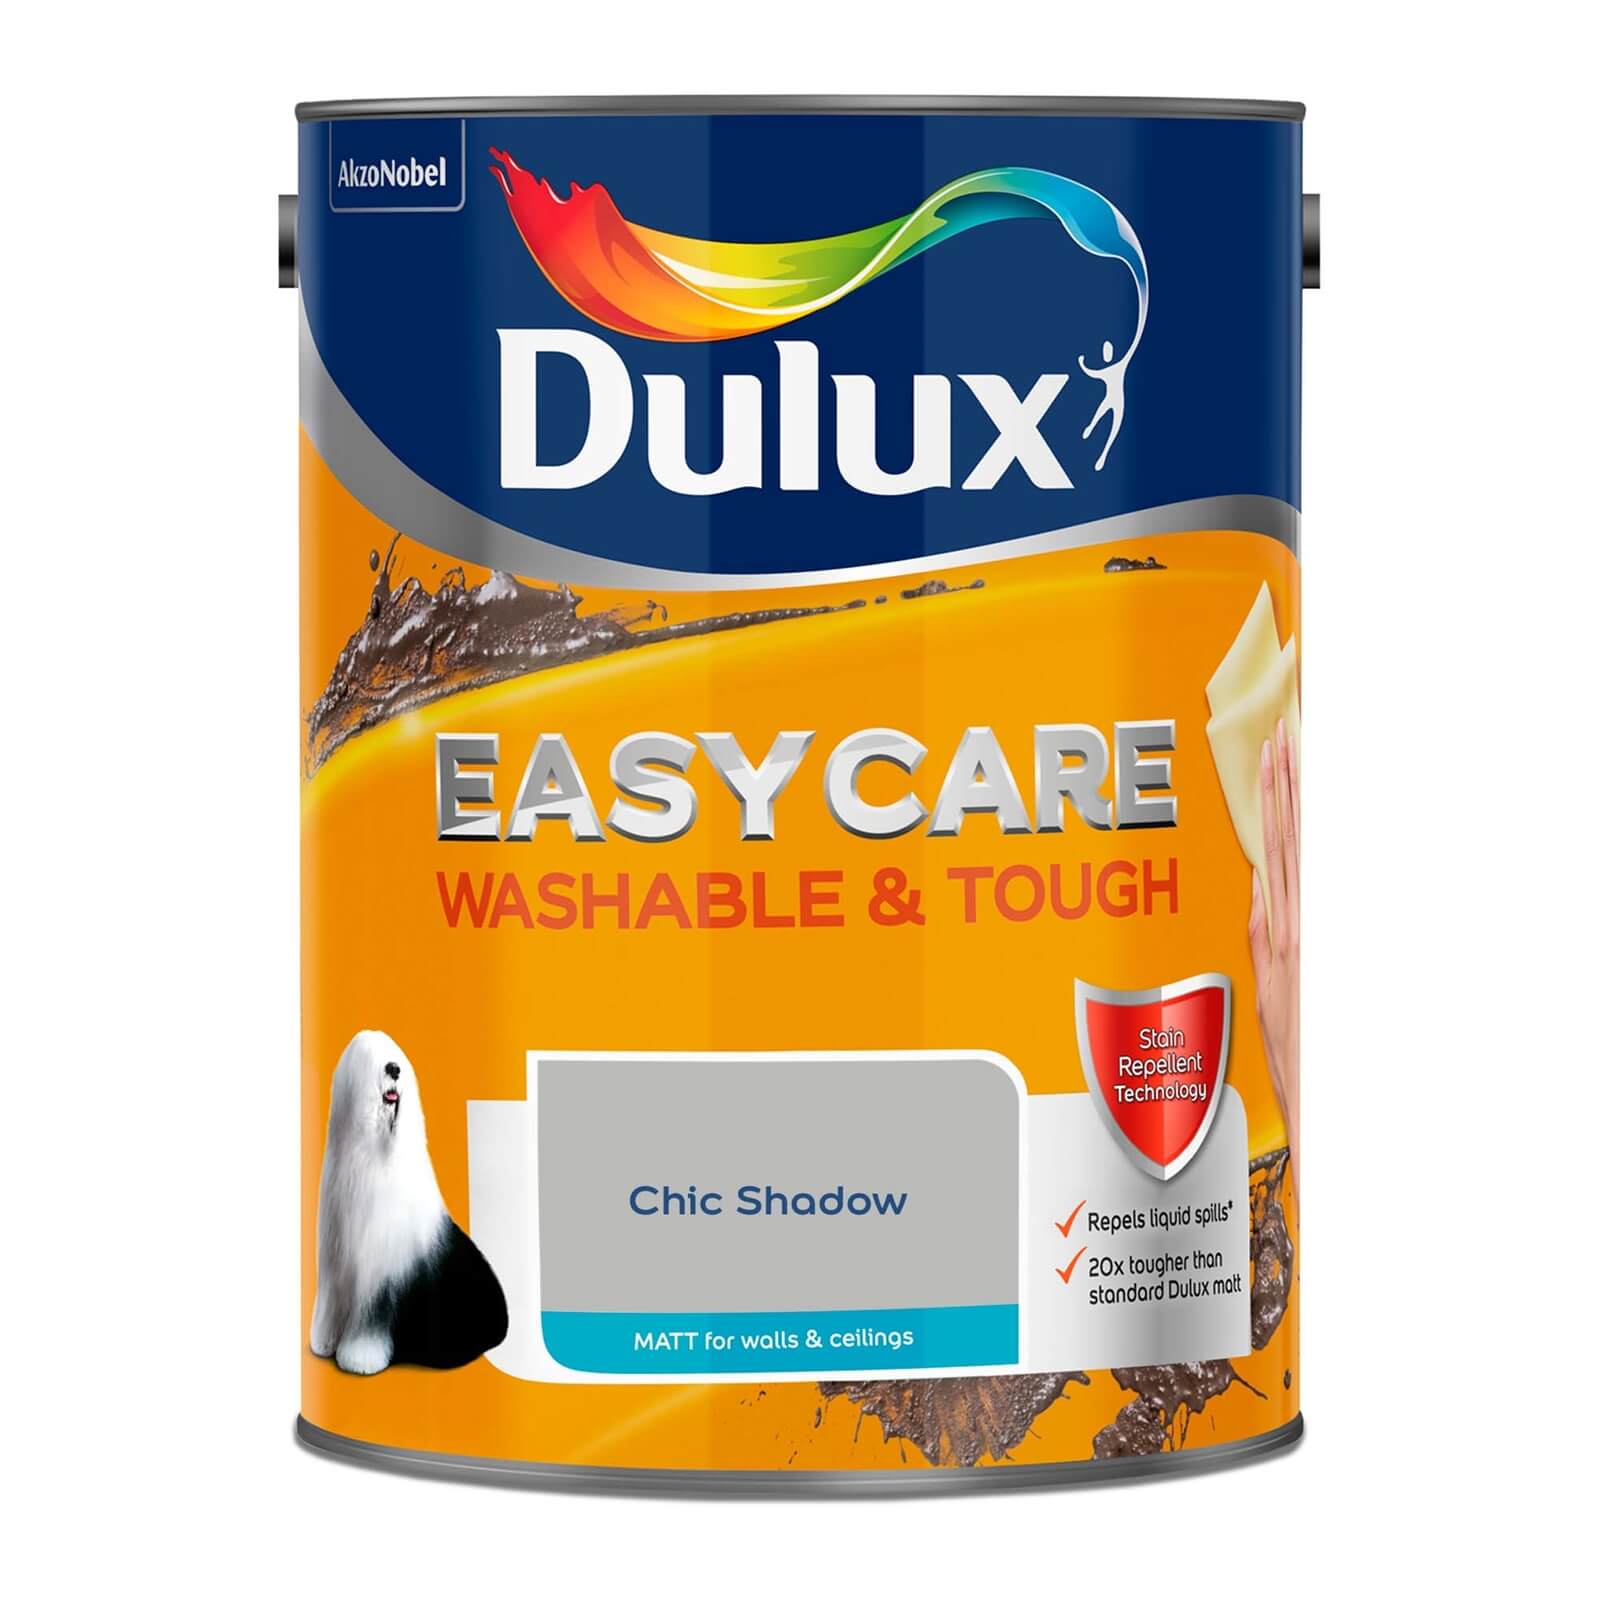 Dulux Easycare Washable & Tough Matt Paint Chic Shadow - 5L